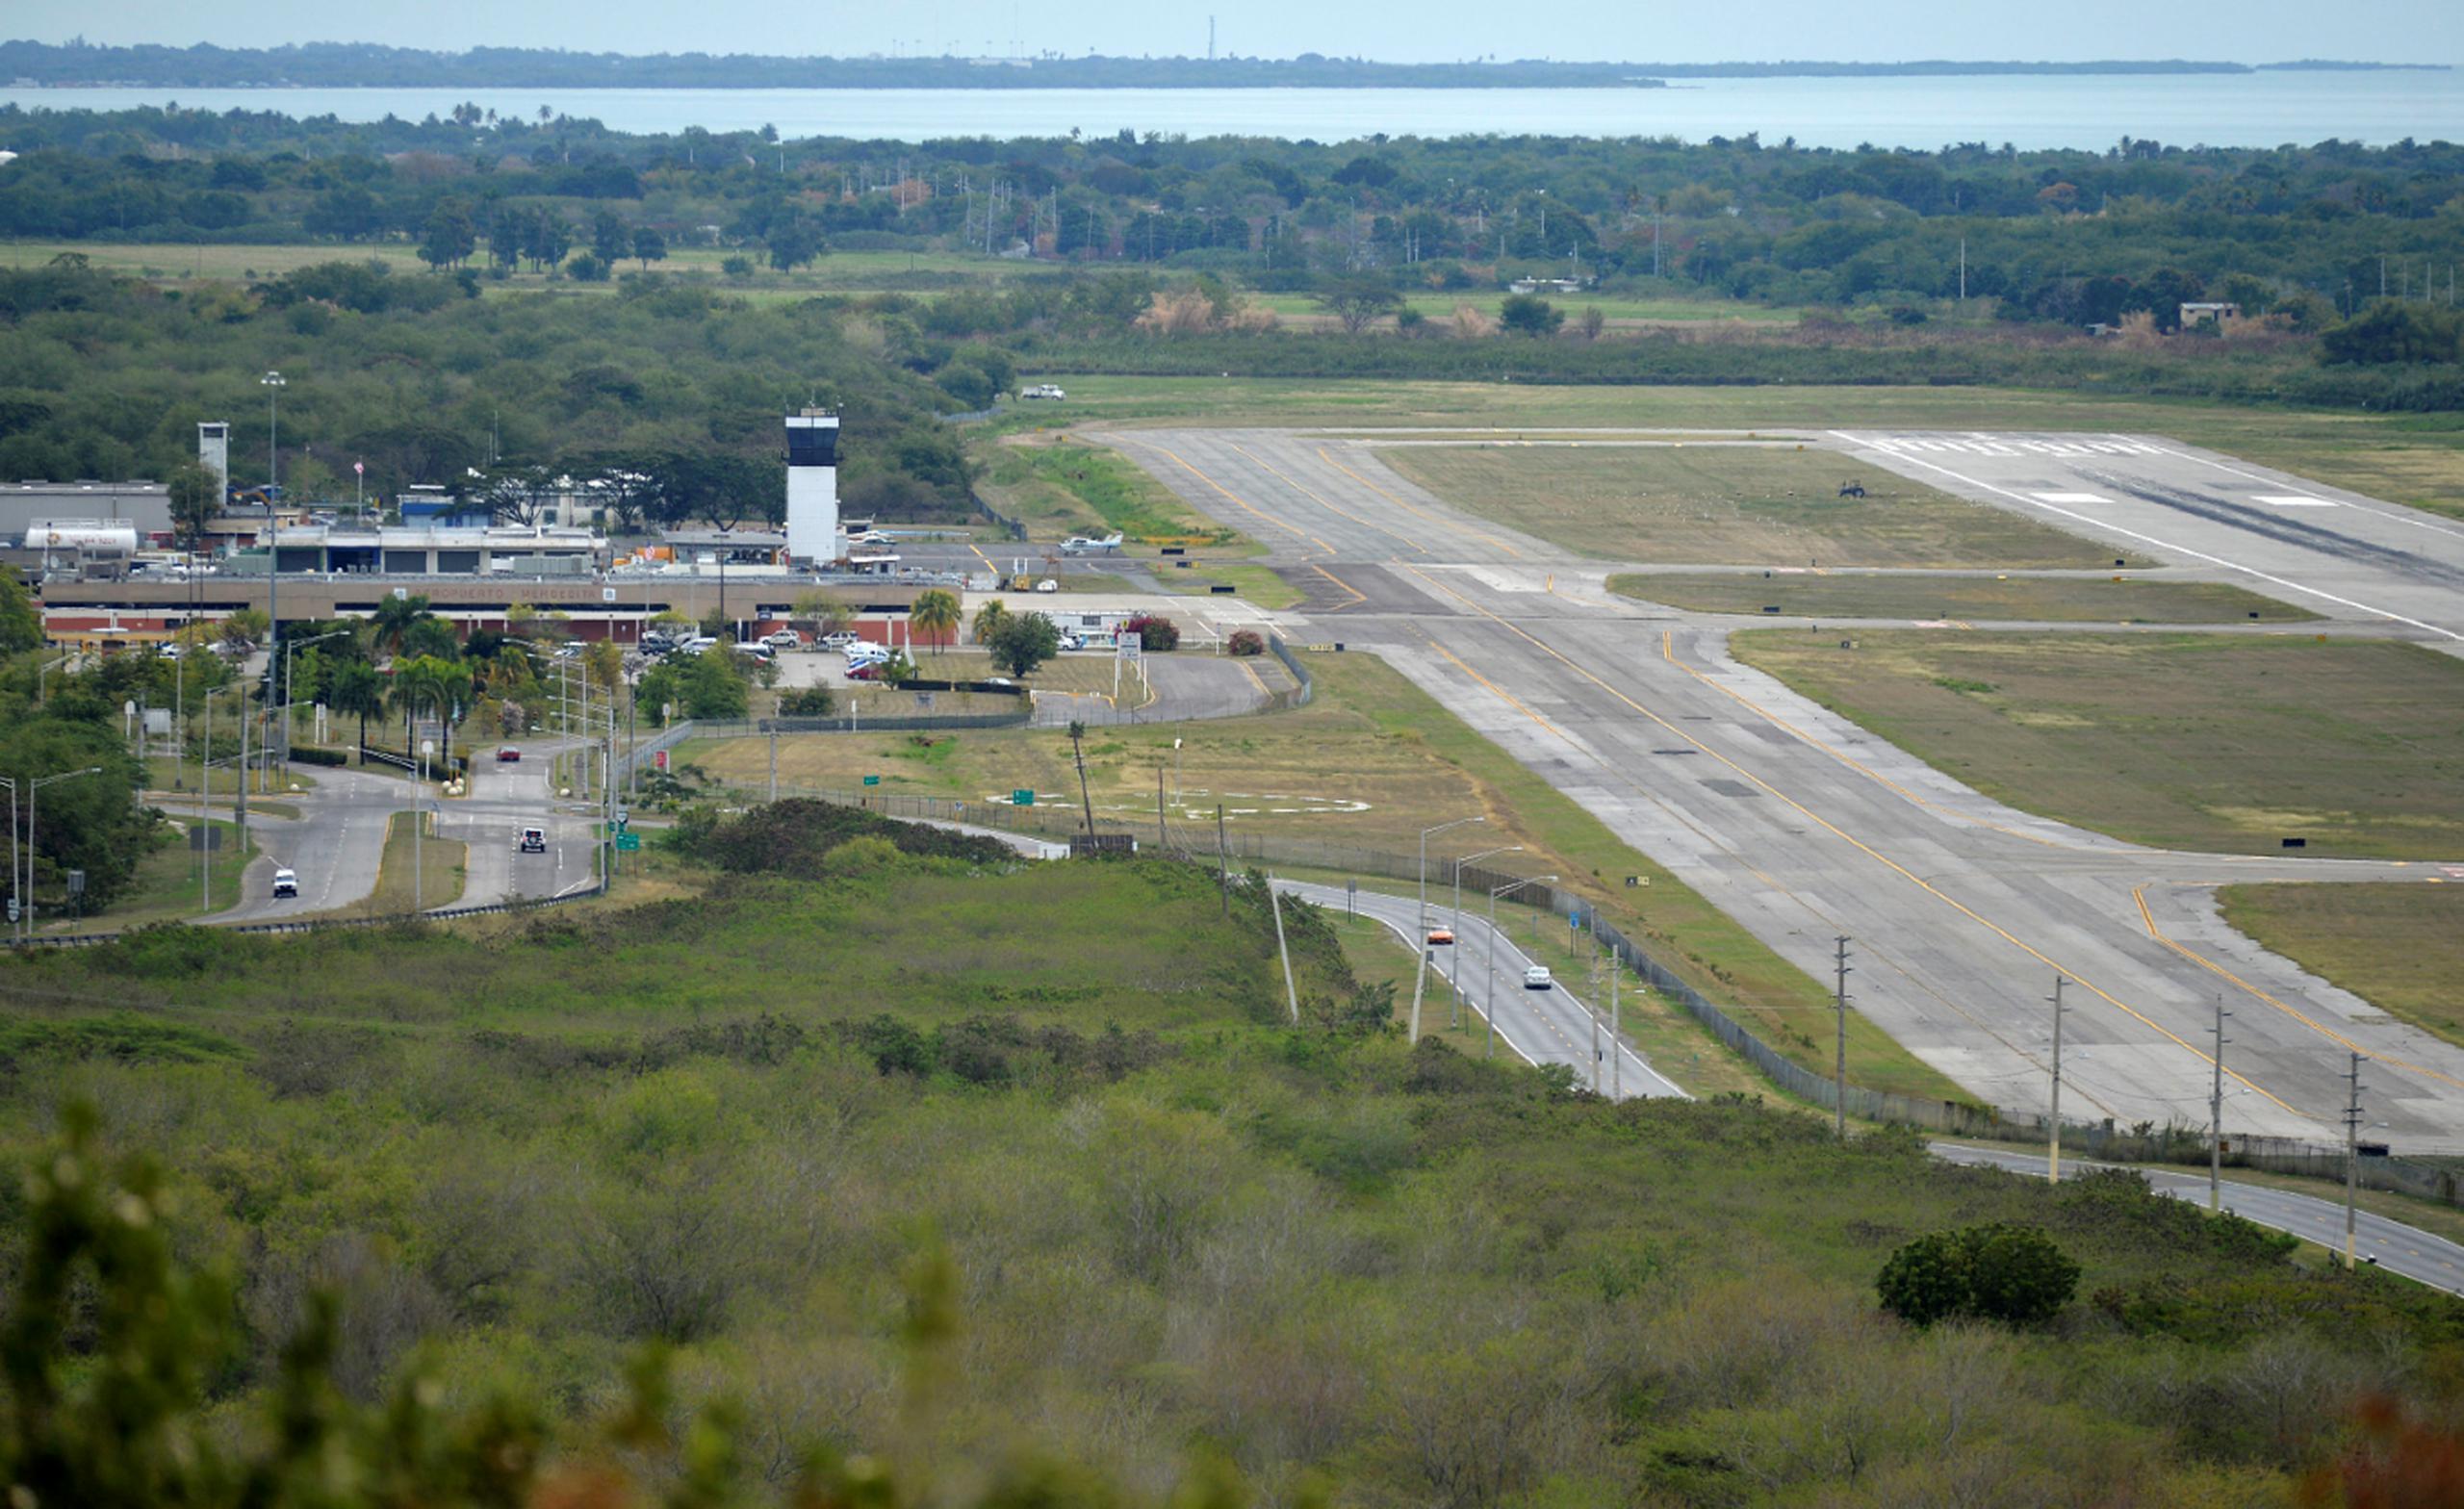 La transformación del Aeropuerto Internacional Mercedita de Ponce en una “Aero Ciudad” en vías de catapultar la economía de una región duramente lacerada por los embates de la naturaleza y la enajenación gubernamental, es la punta de lanza para romper con la crisis que por décadas afecta la zona.